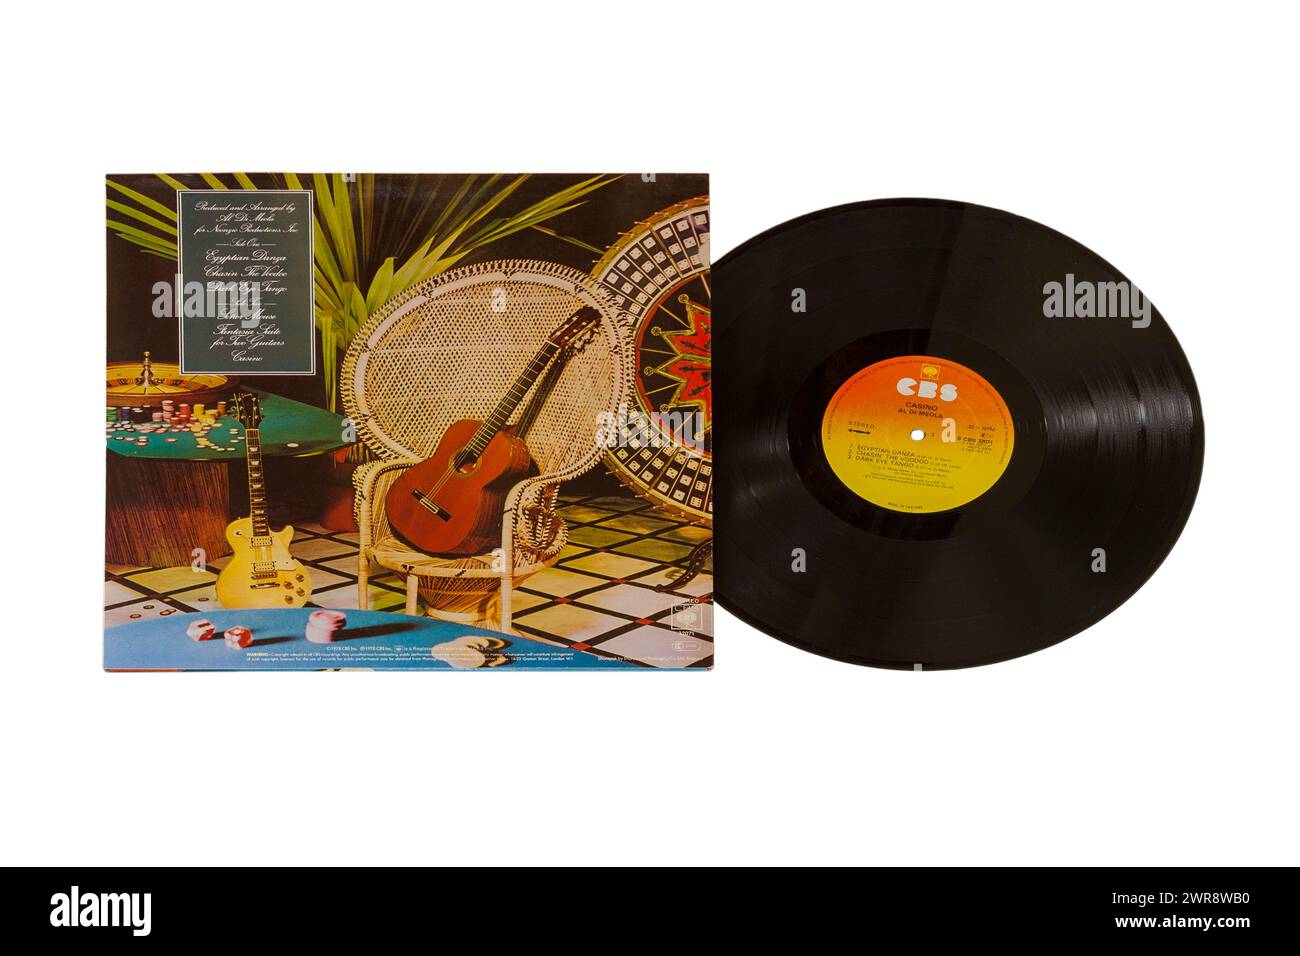 Al Di Meola Casino vinyl record album LP cover isolated on white background - 1978 Stock Photo